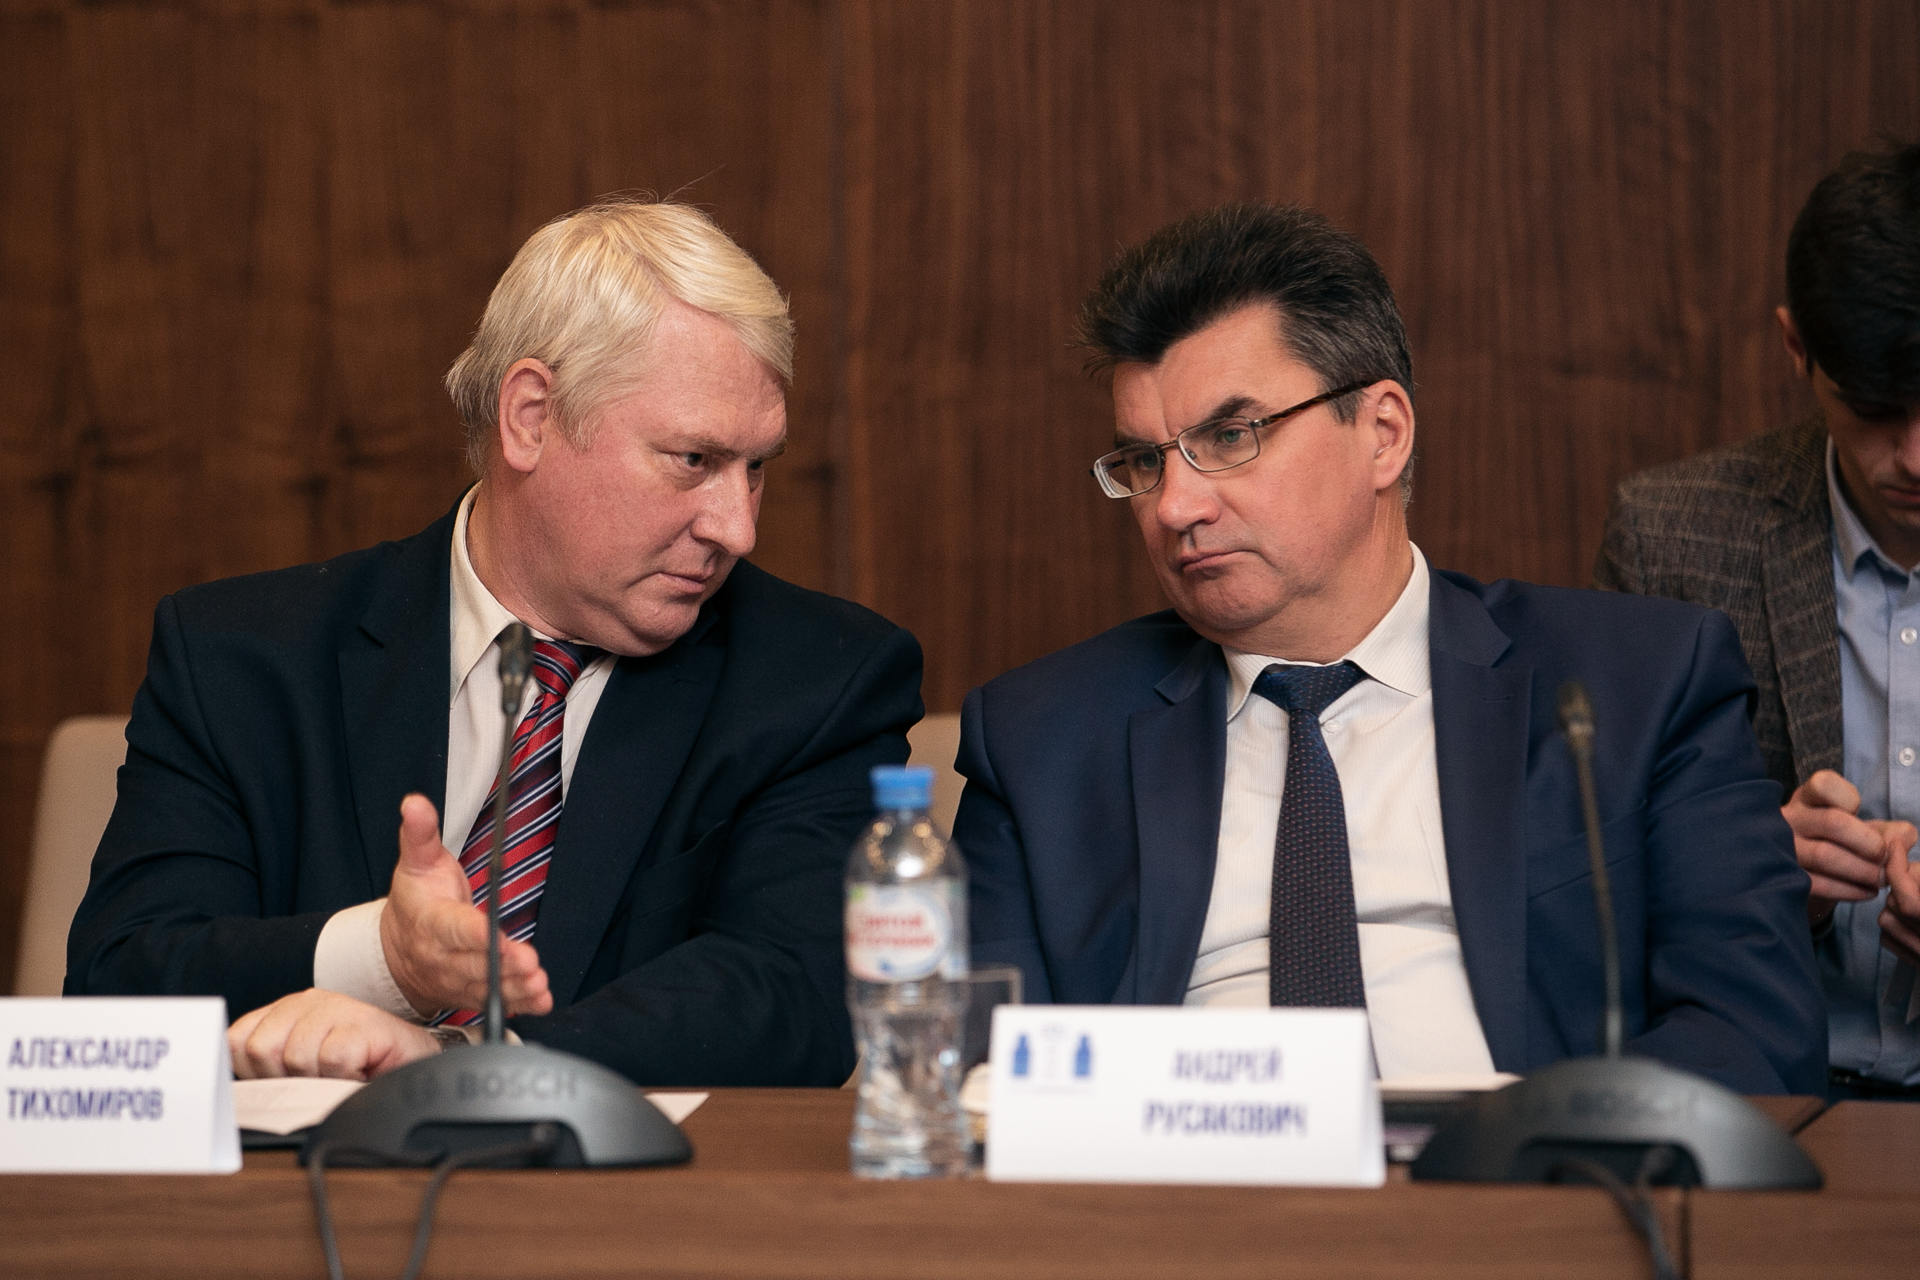 Постоянно действующий экспертный круглый стол «Беларусь-Польша»: инаугурационное заседание